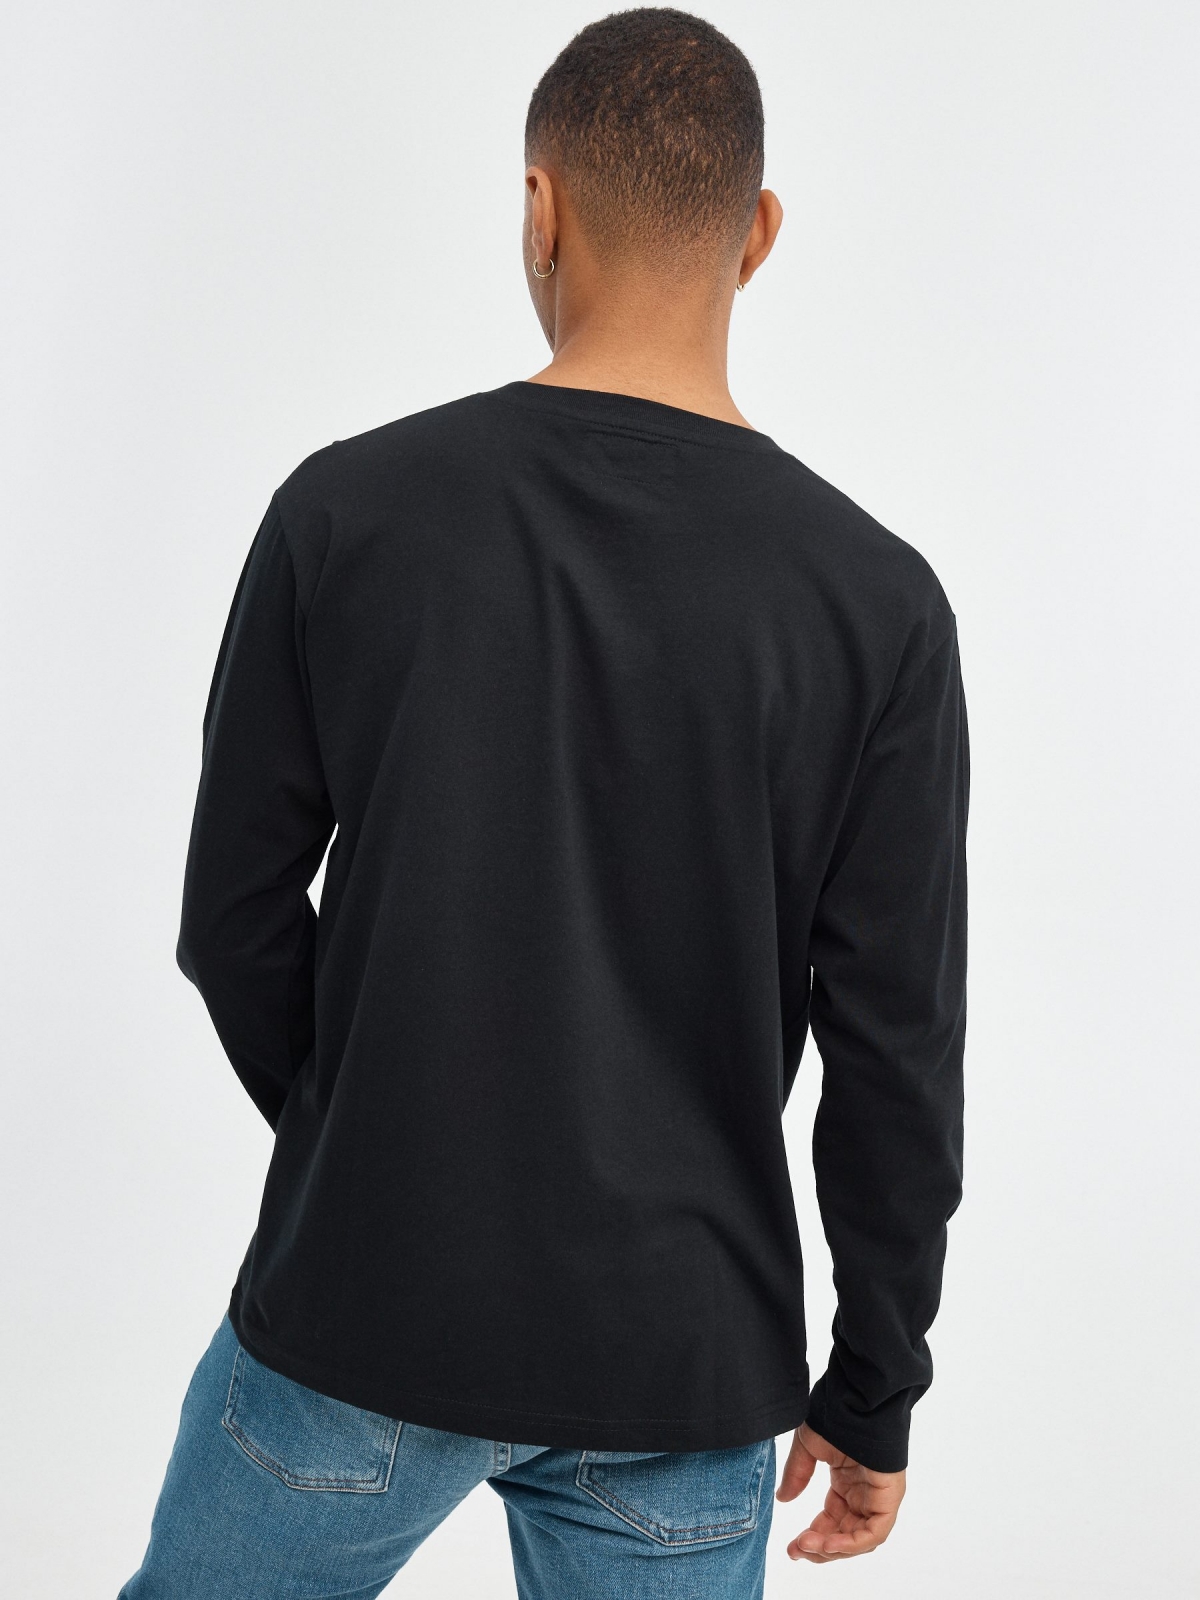 INSIDE regular T-shirt black middle back view